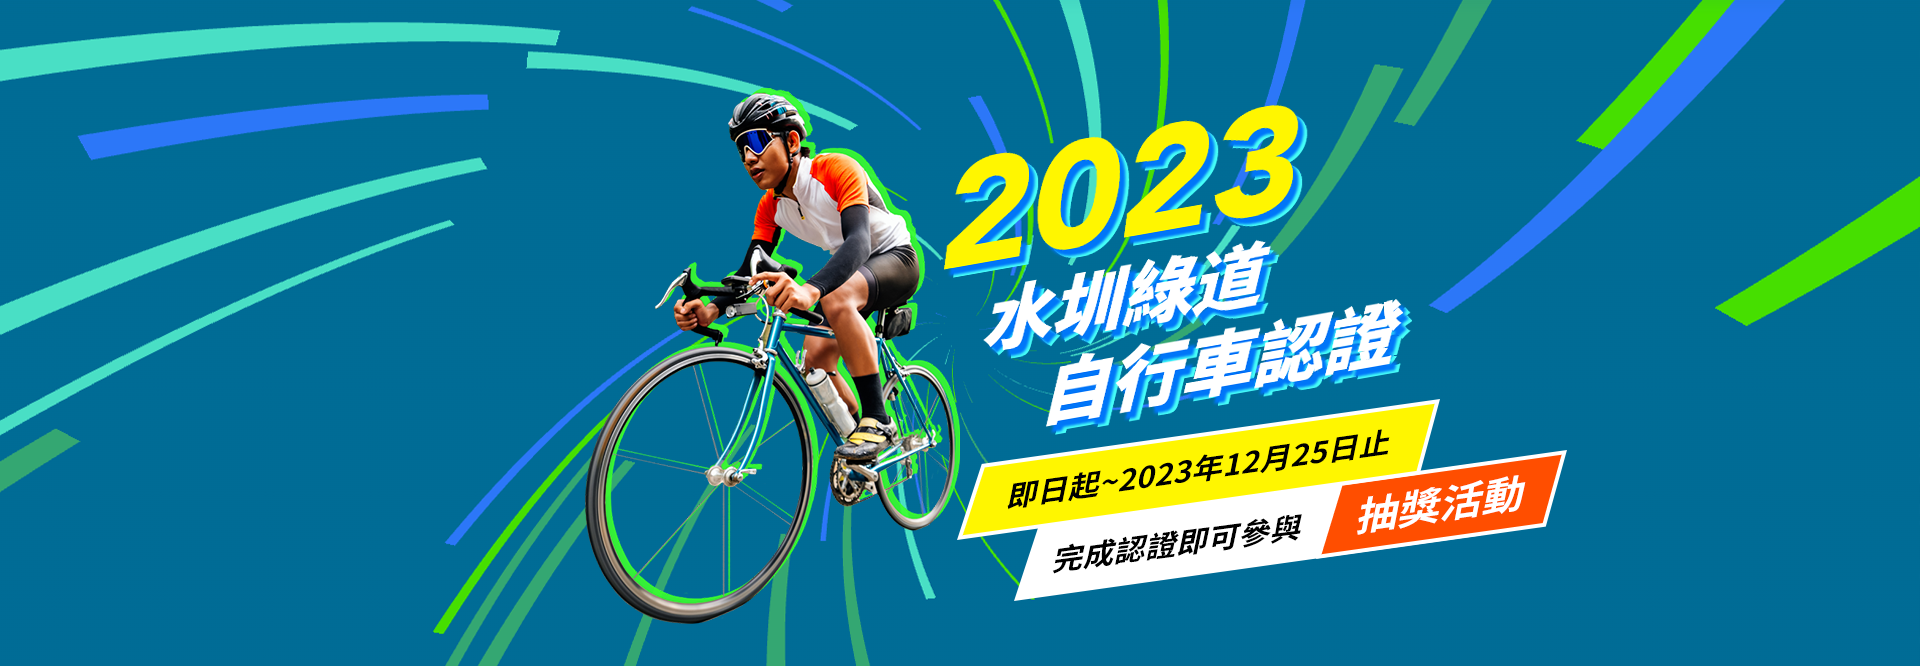 2023水圳綠道自行車認證